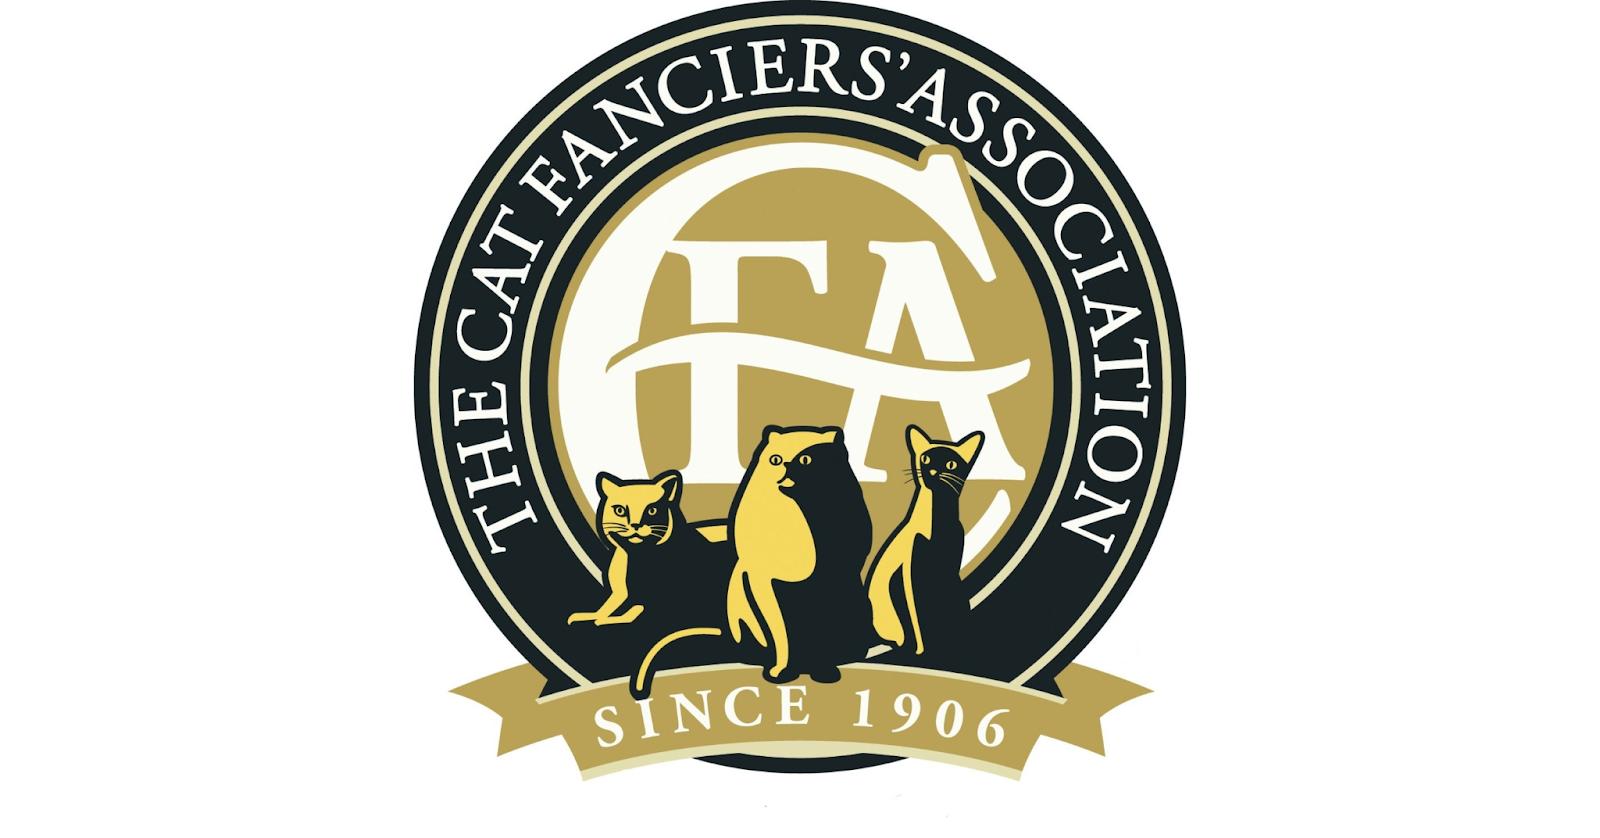 1. The Cat Fanciers’ Association